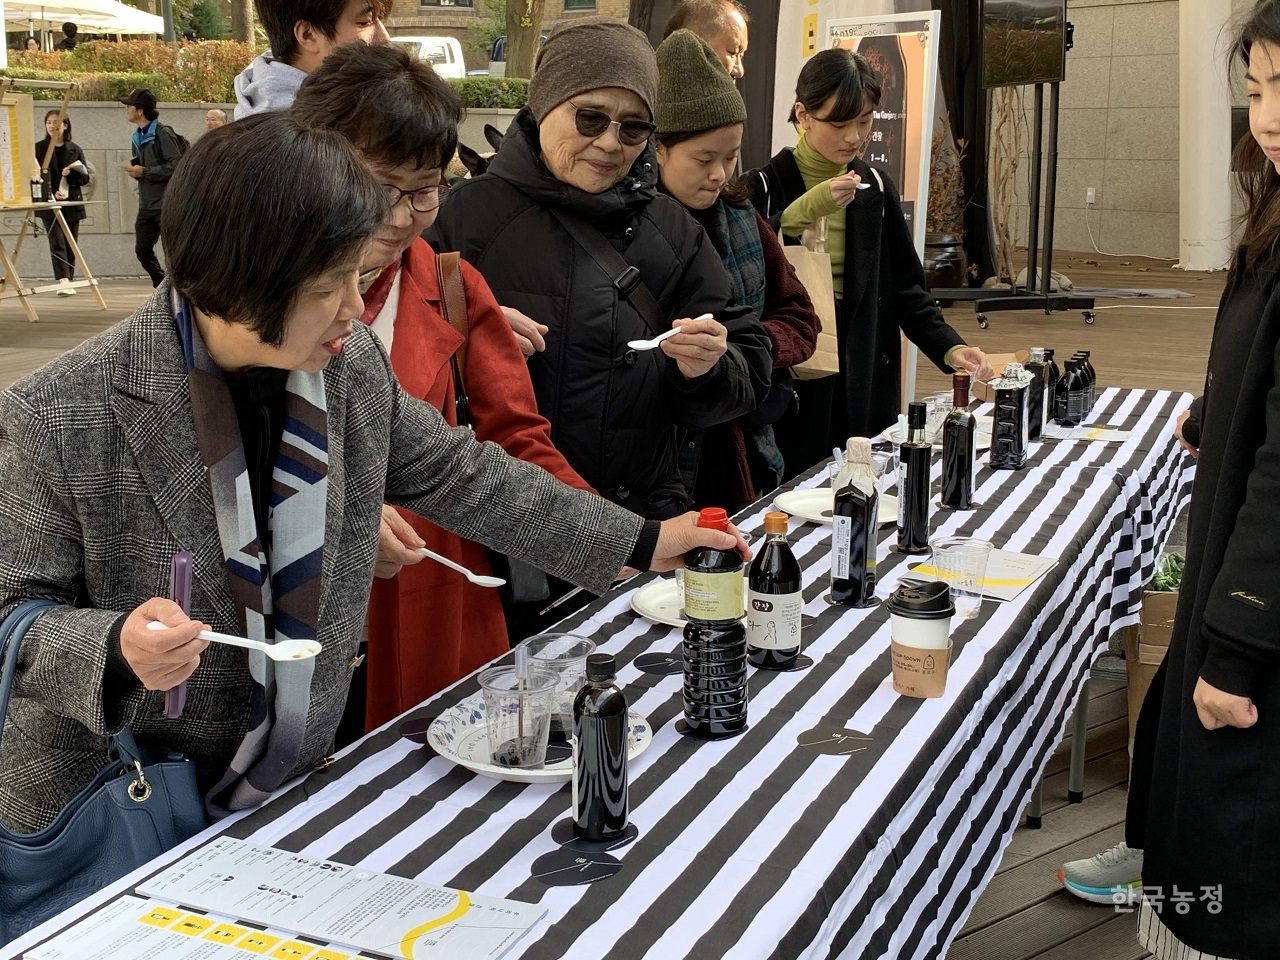 지난 10일 서울 종로구 마로니에공원에서 열린 ‘2019 참간장어워즈' 행사에서 평가위원들이 간장 시식을 하고 있다. 슬로푸드문화원 제공